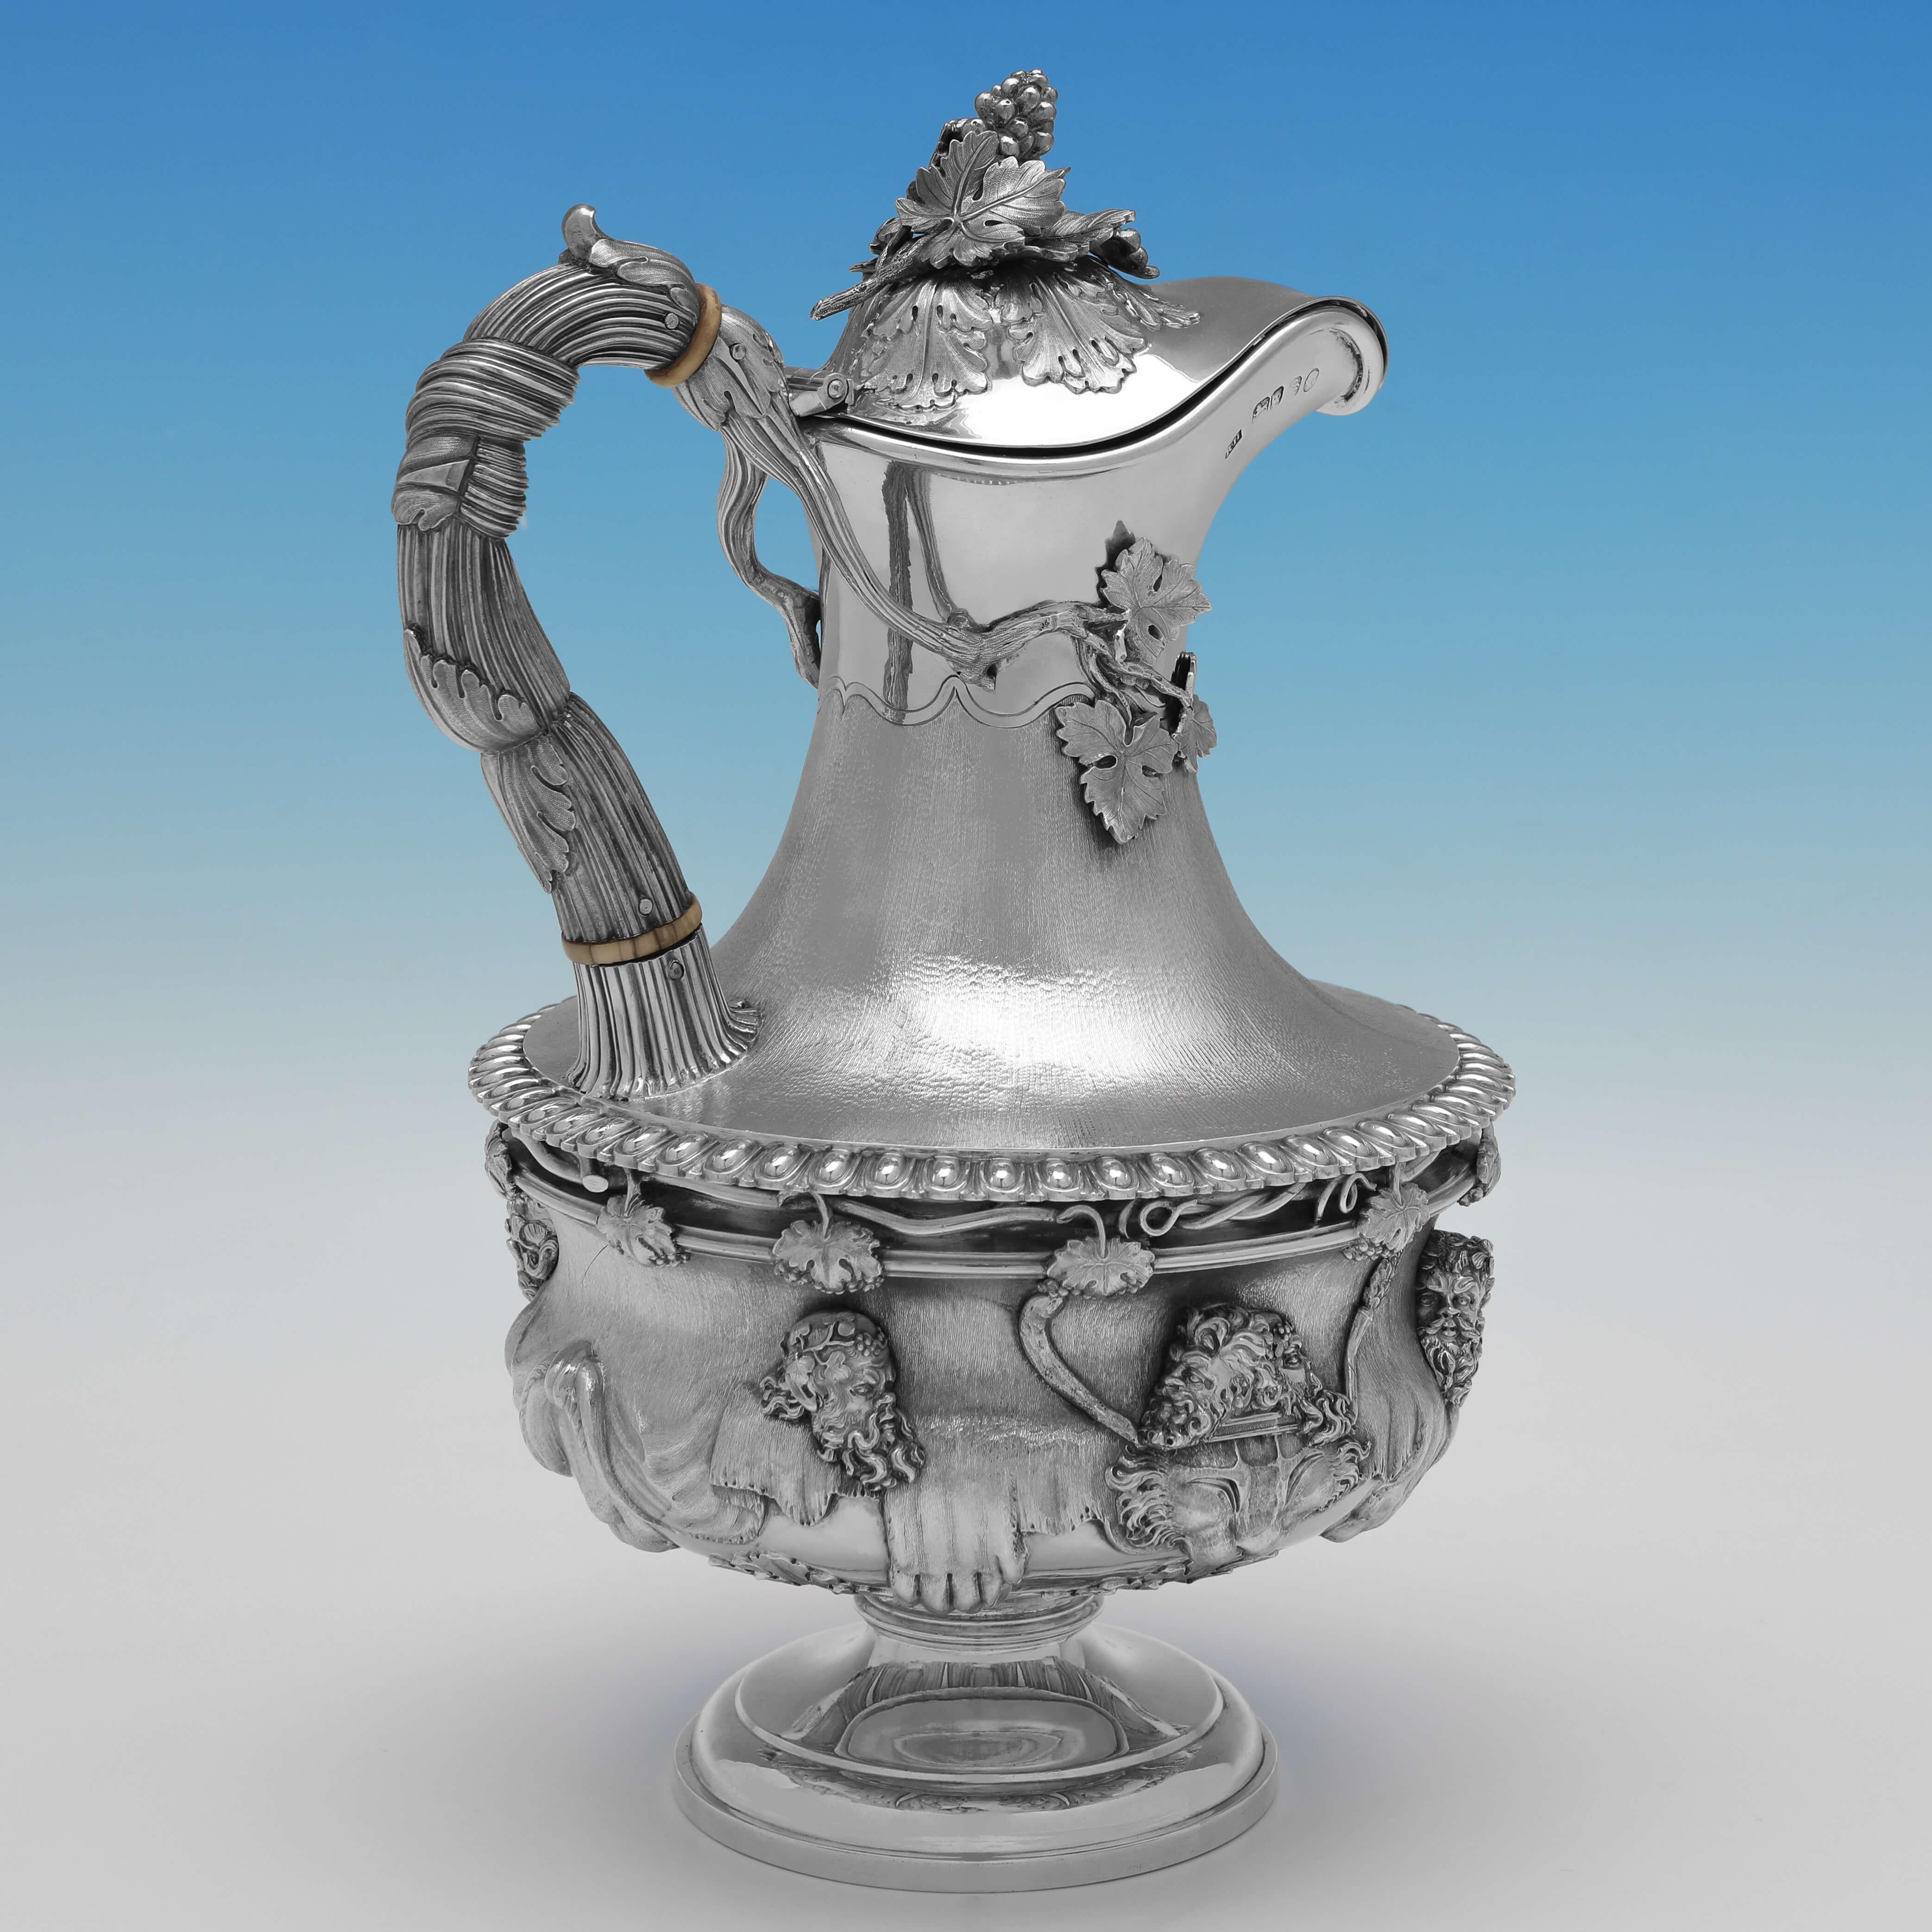 Poinçonnée à Londres en 1853 par Robert Hennell III, cette étonnante cruche victorienne ancienne en argent sterling est un exemple très rare modelé dans le style du célèbre vase Warwick. 

La cruche mesure 28,5 cm de haut, 19 cm de large, 16,5 cm de